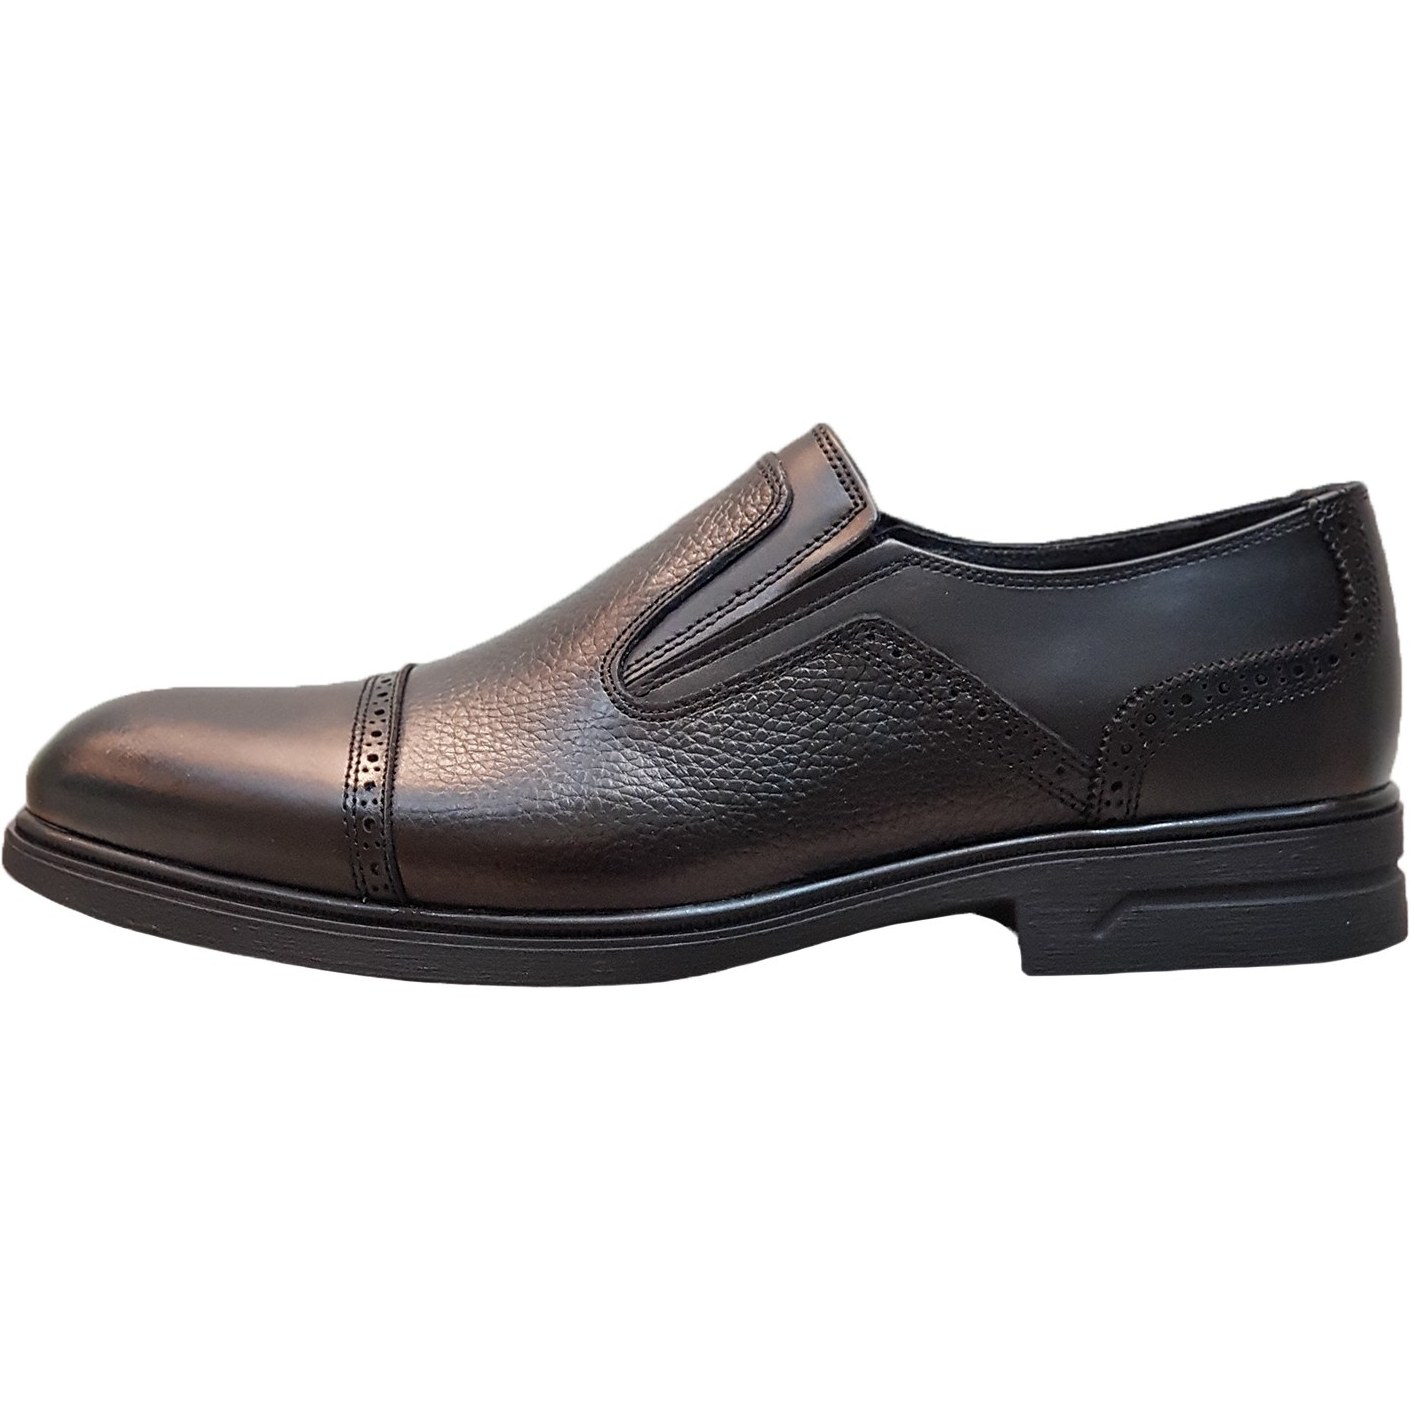 خرید و قیمت کفش رسمی مردانه مدل چرم طبیعی کد 00138t.k رنگ مشکی - 42 ا mensluxury leather shoes code 00138t.k black color | ترب